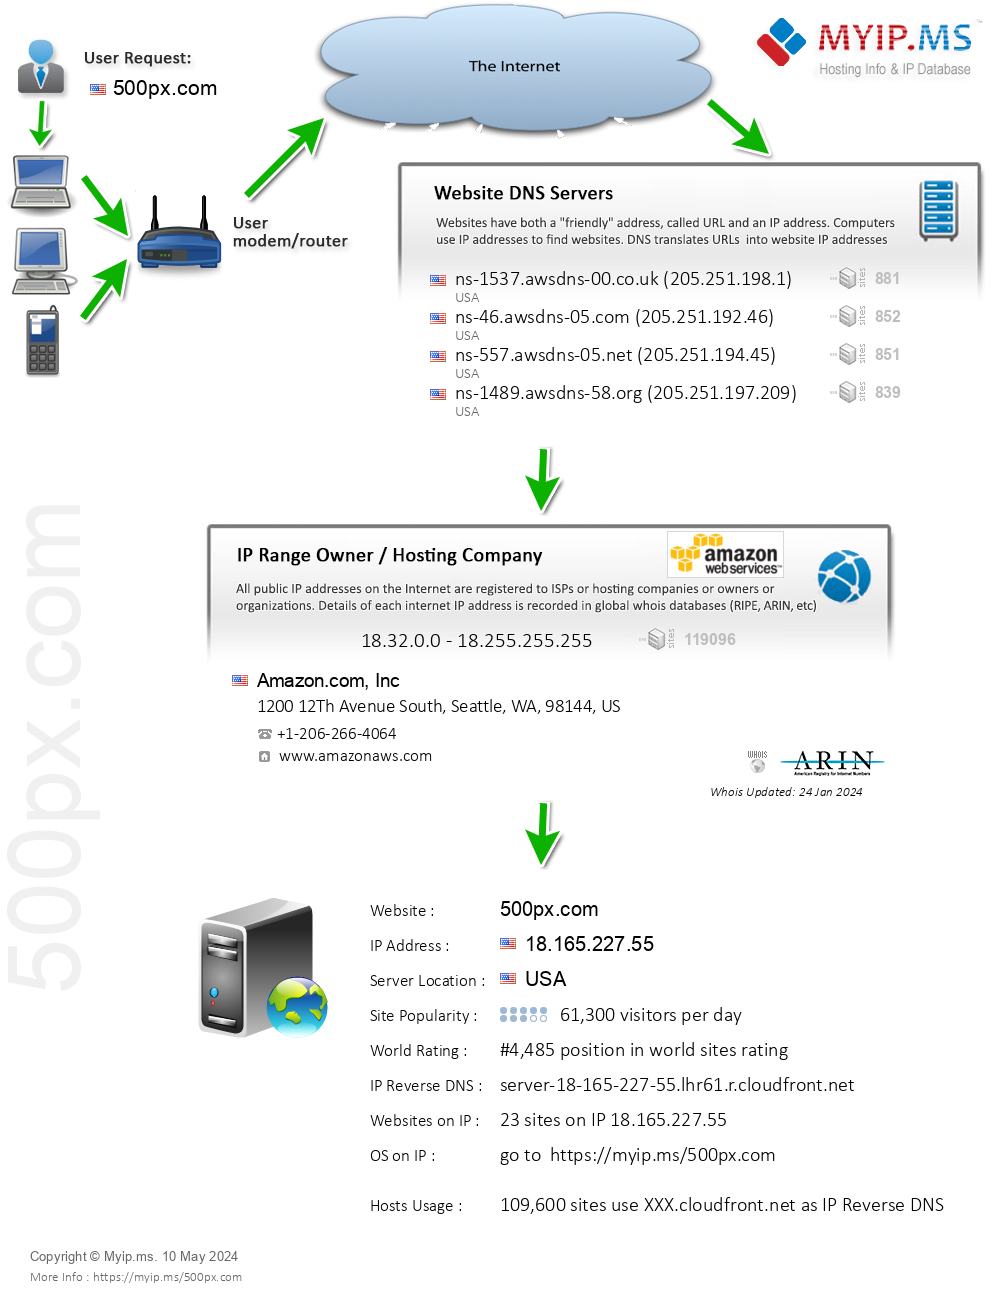 500px.com - Website Hosting Visual IP Diagram